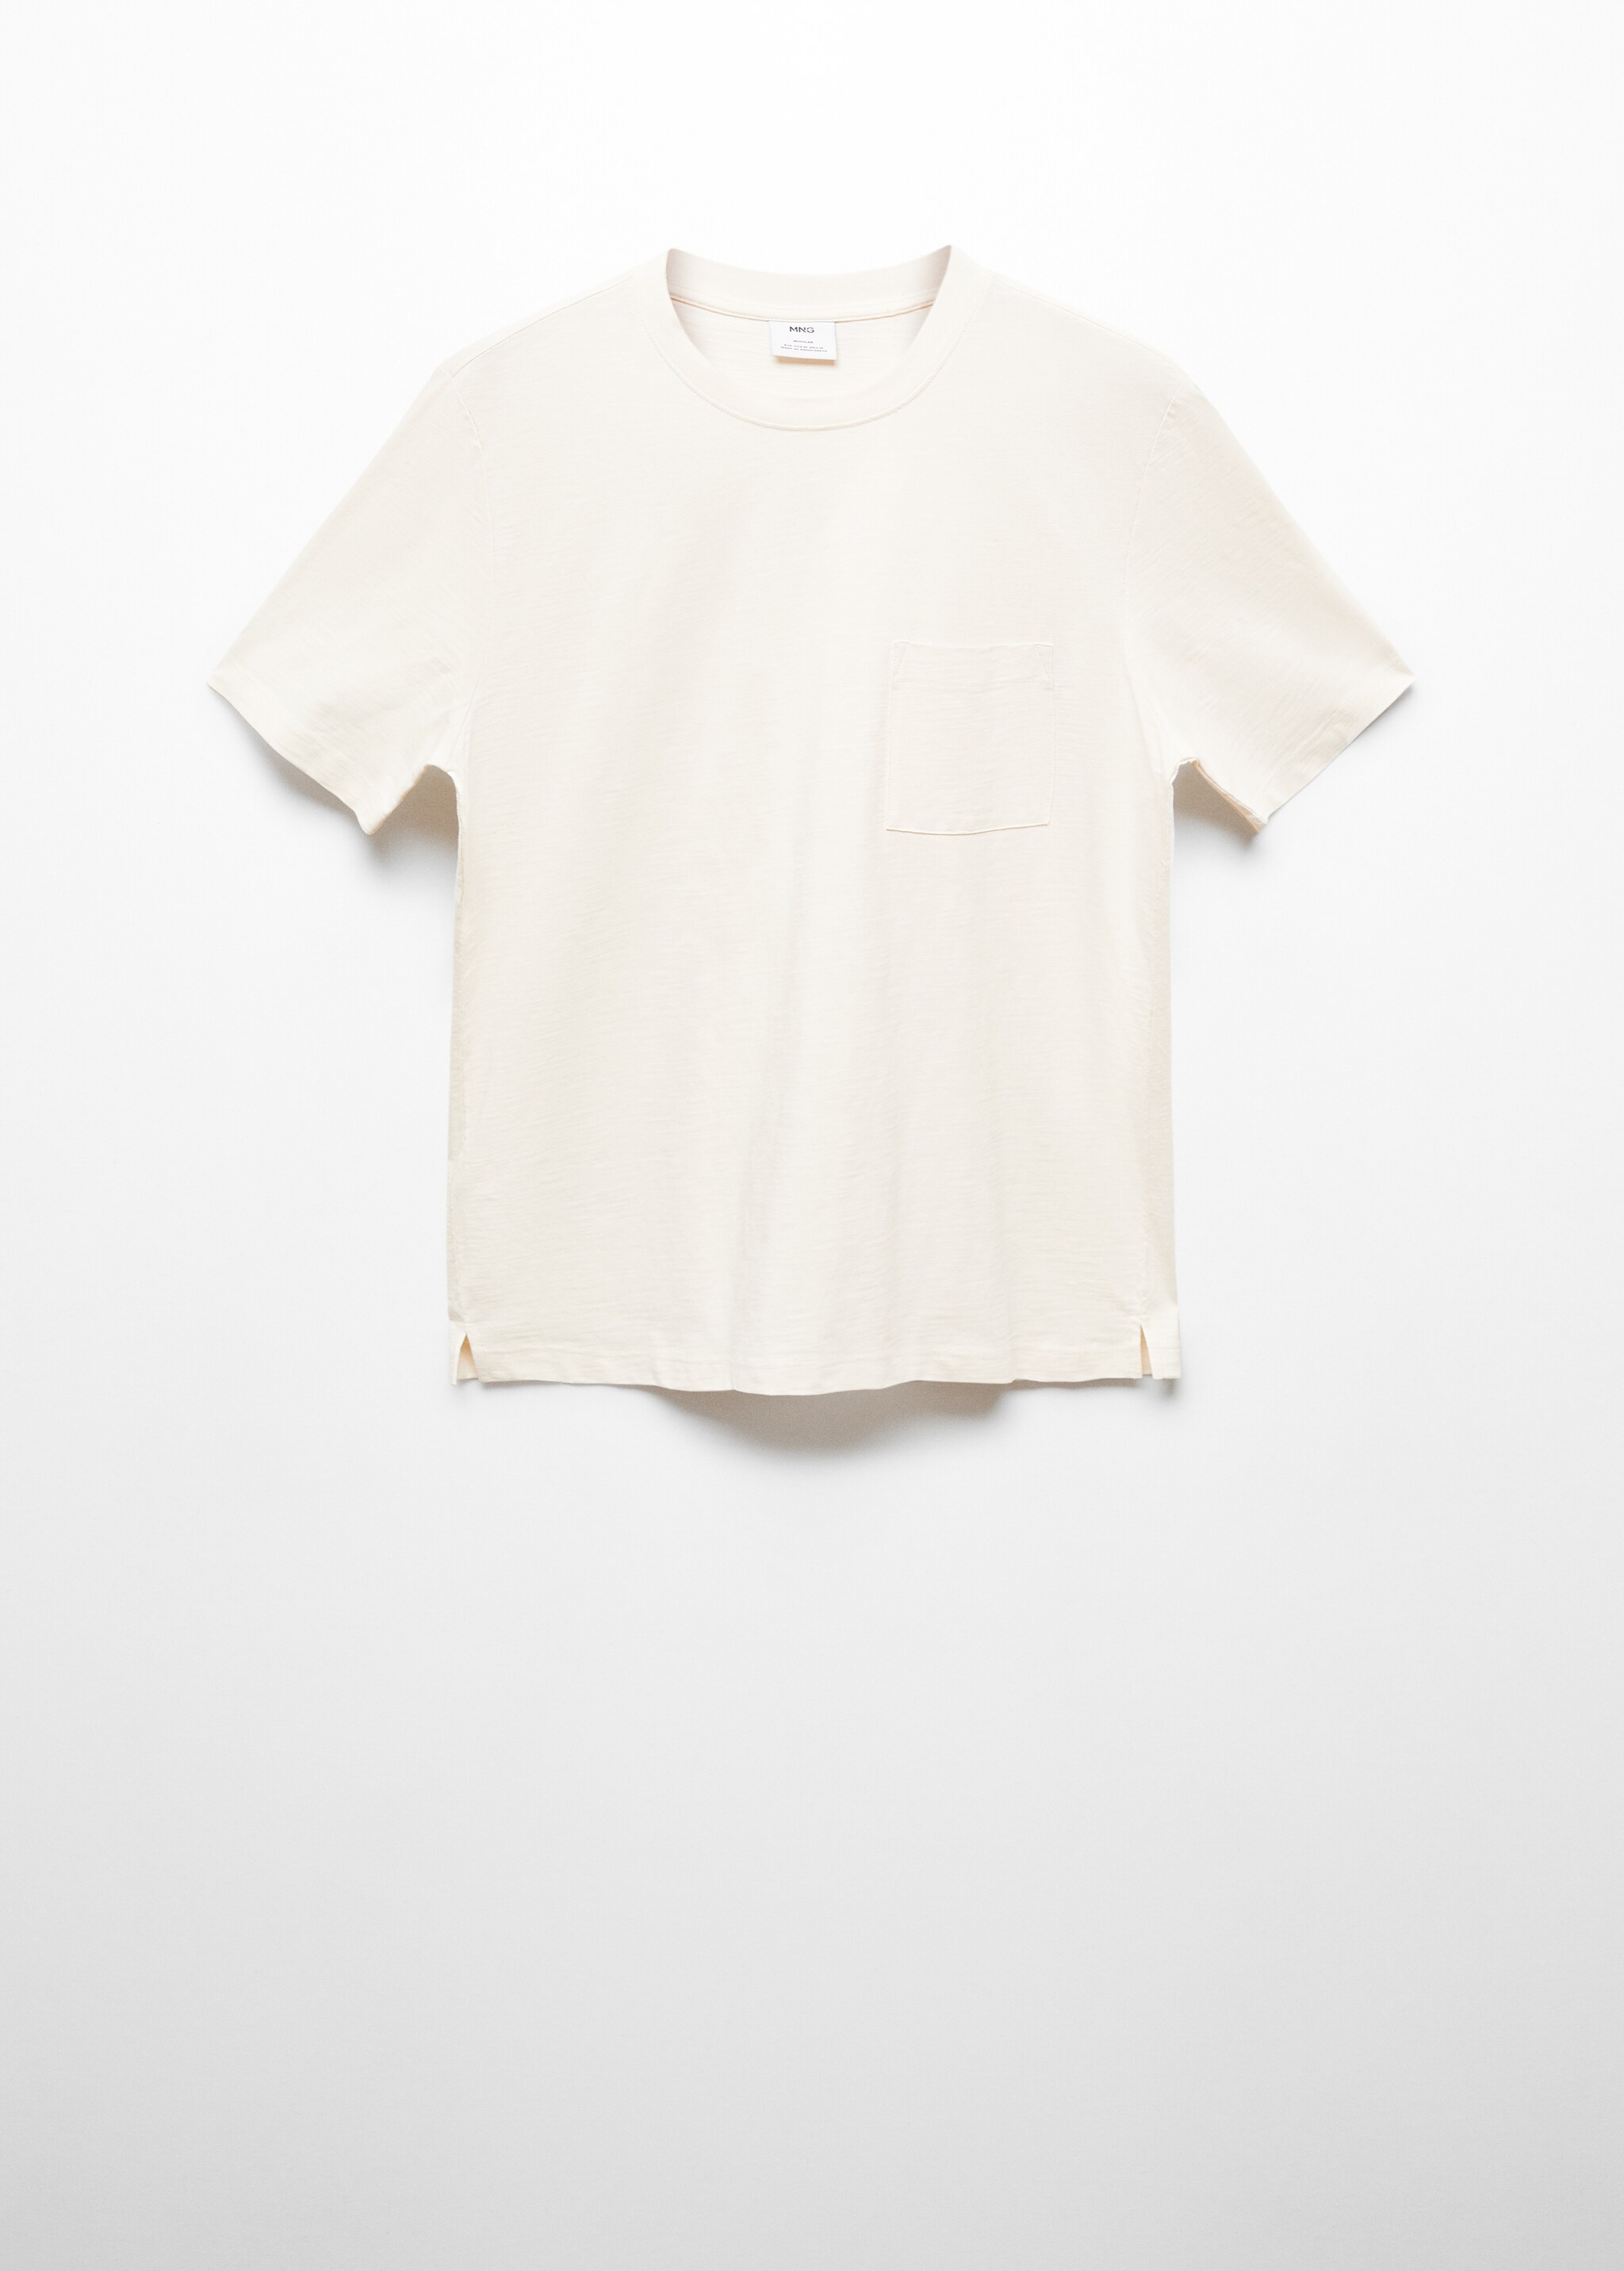 T-shirt poche 100 % coton - Article sans modèle